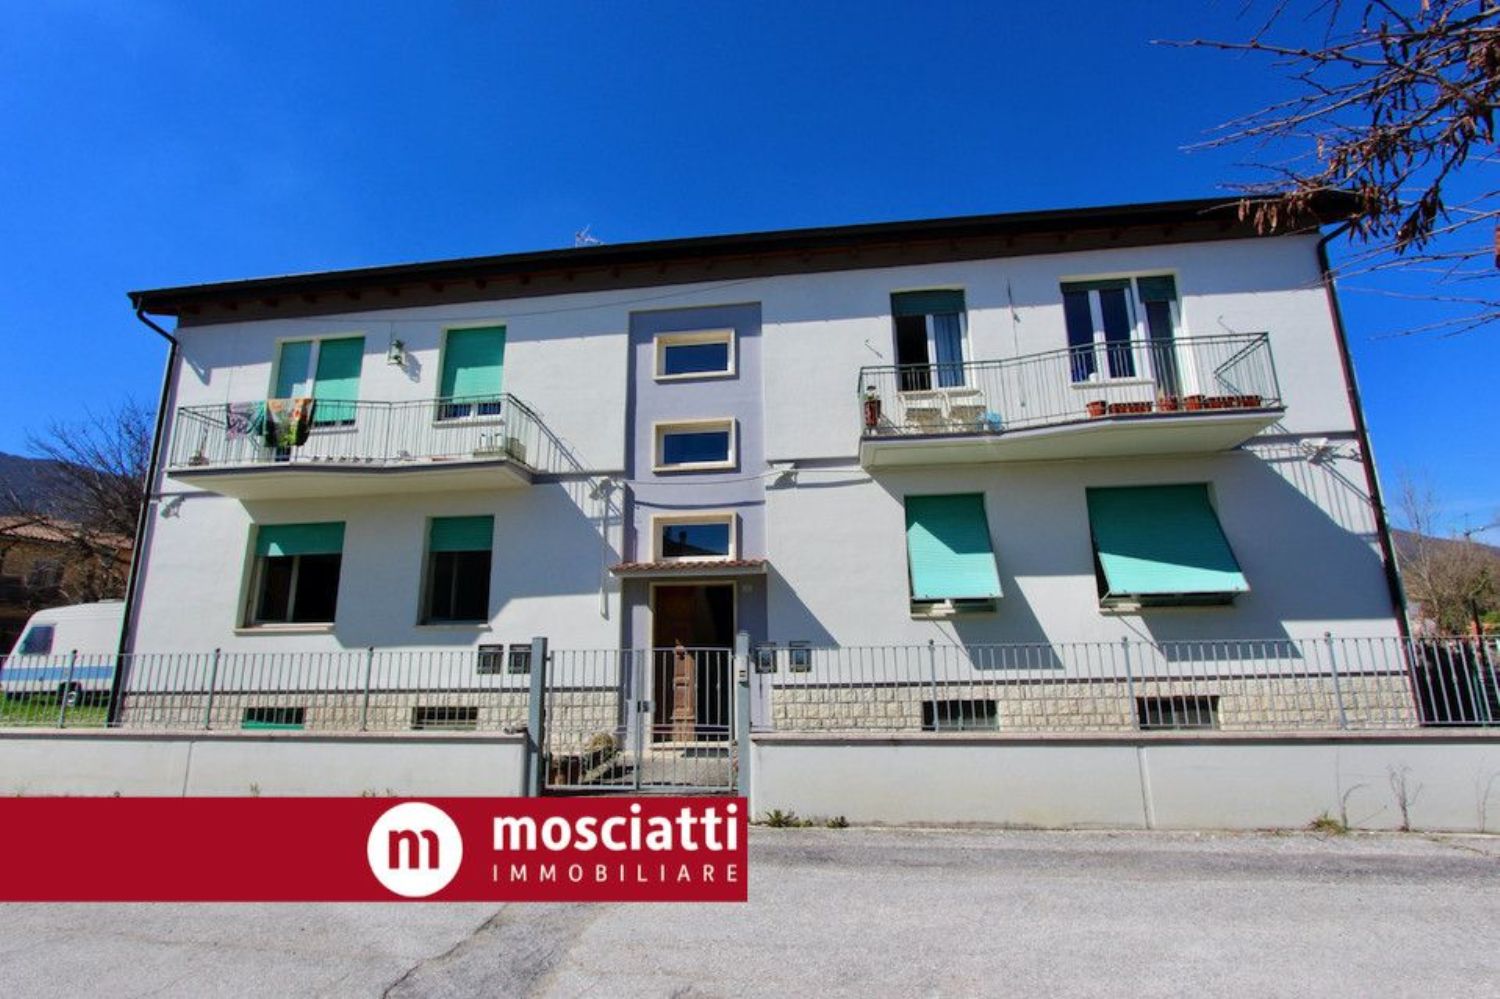 Appartamento in vendita a Esanatoglia, 3 locali, prezzo € 50.000 | PortaleAgenzieImmobiliari.it